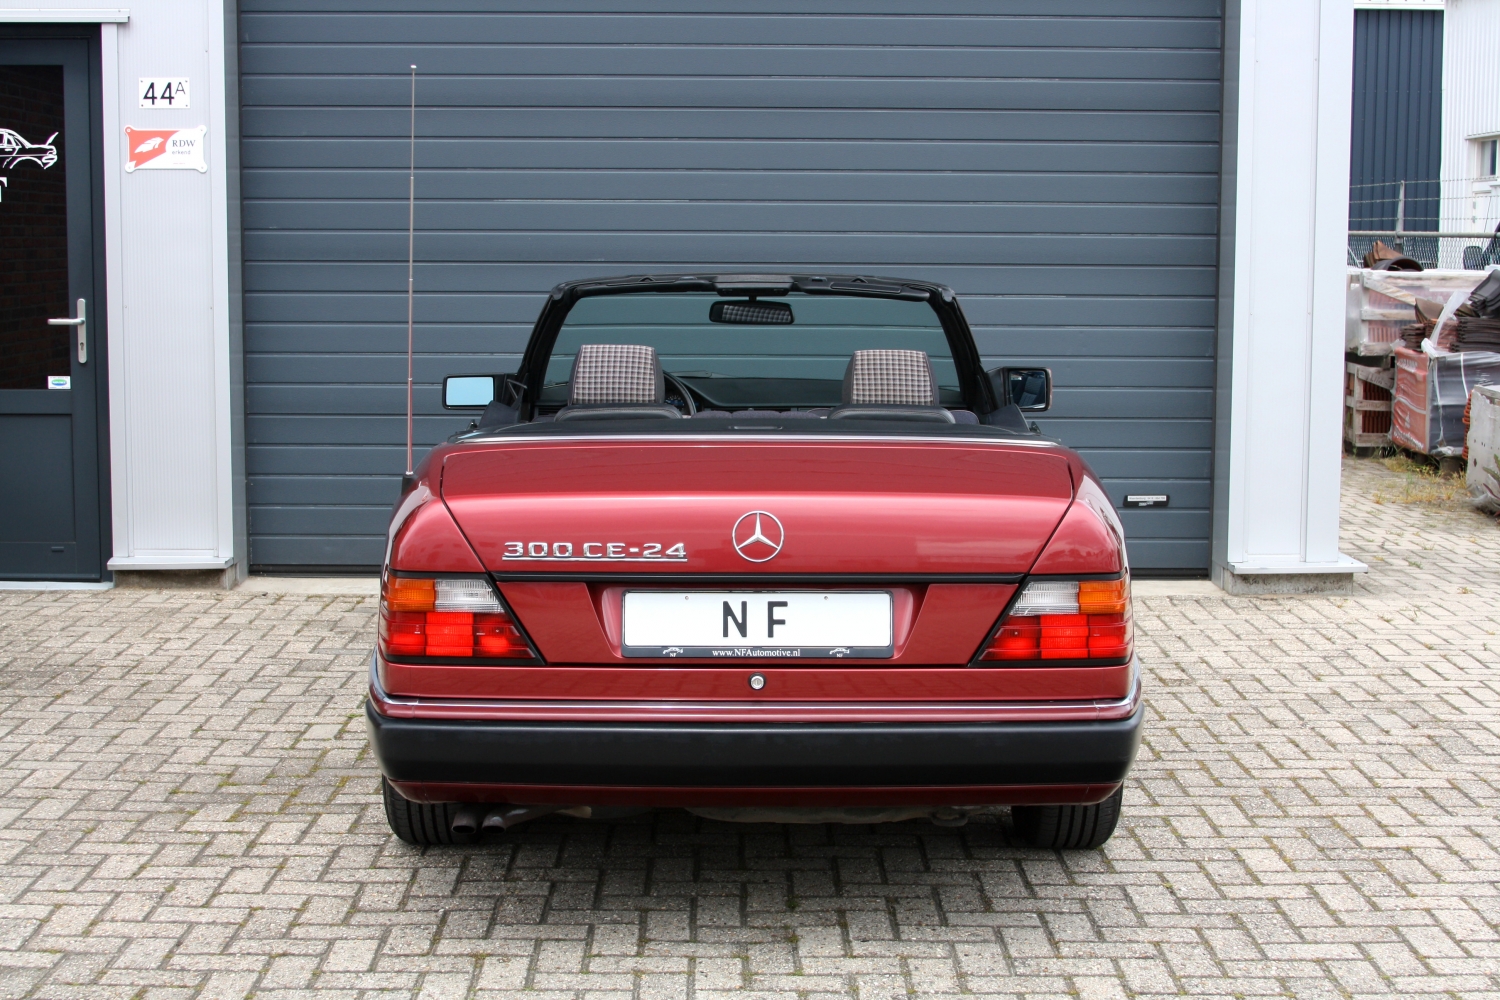 Mercedes-Benz-300CE-24v-Cabriolet-1992-030.JPG